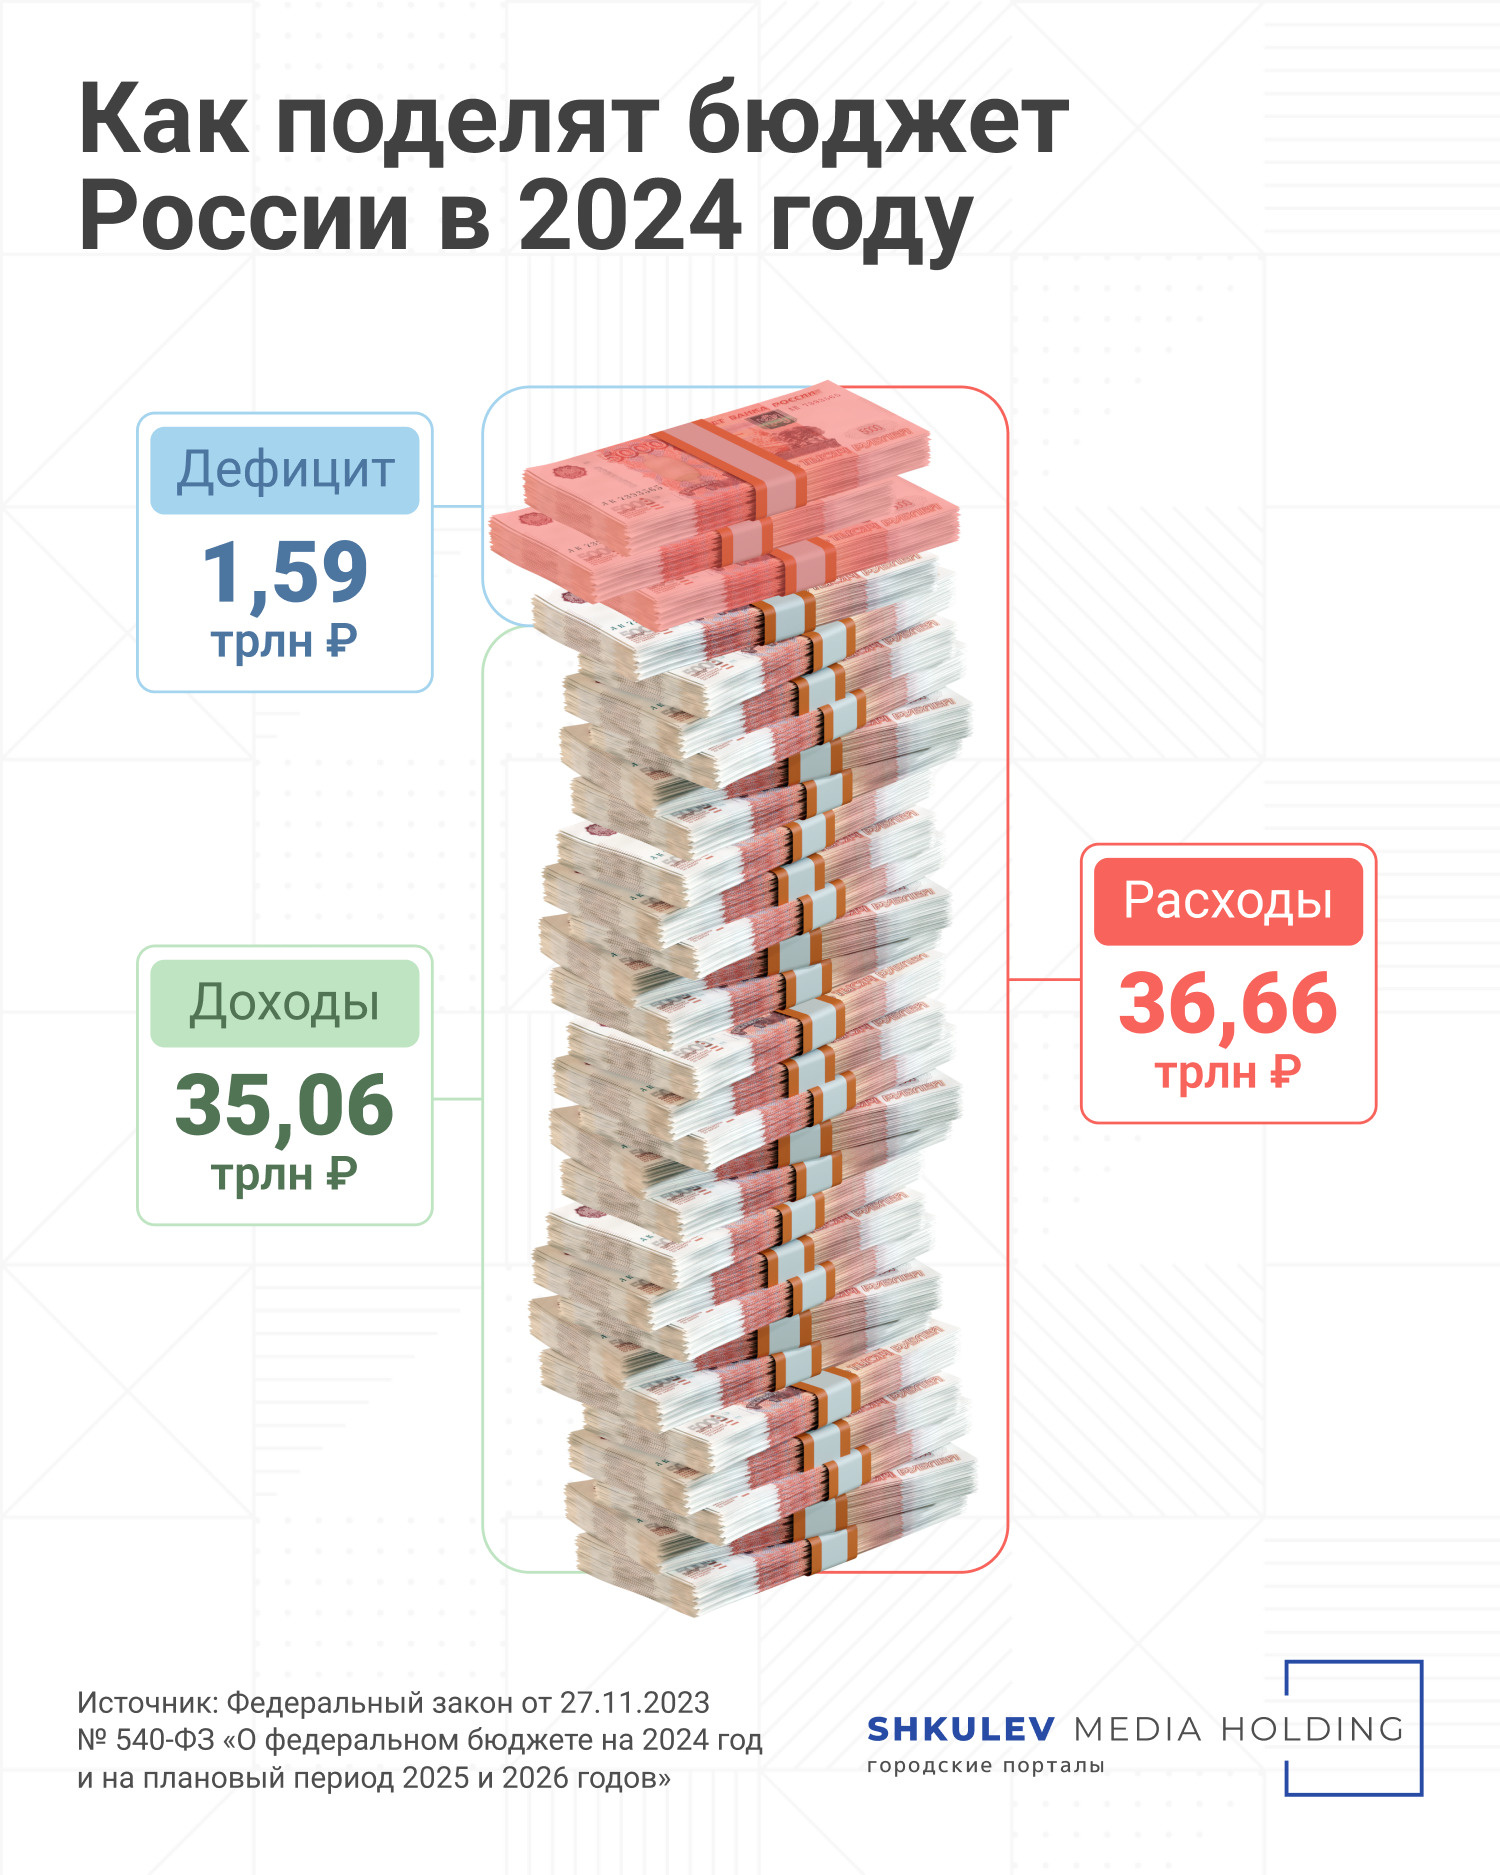 В 2023 году расходы бюджета были запланированы на уровне 29,1 трлн рублей, в 2024 году сумма больше — 36,66 трлн